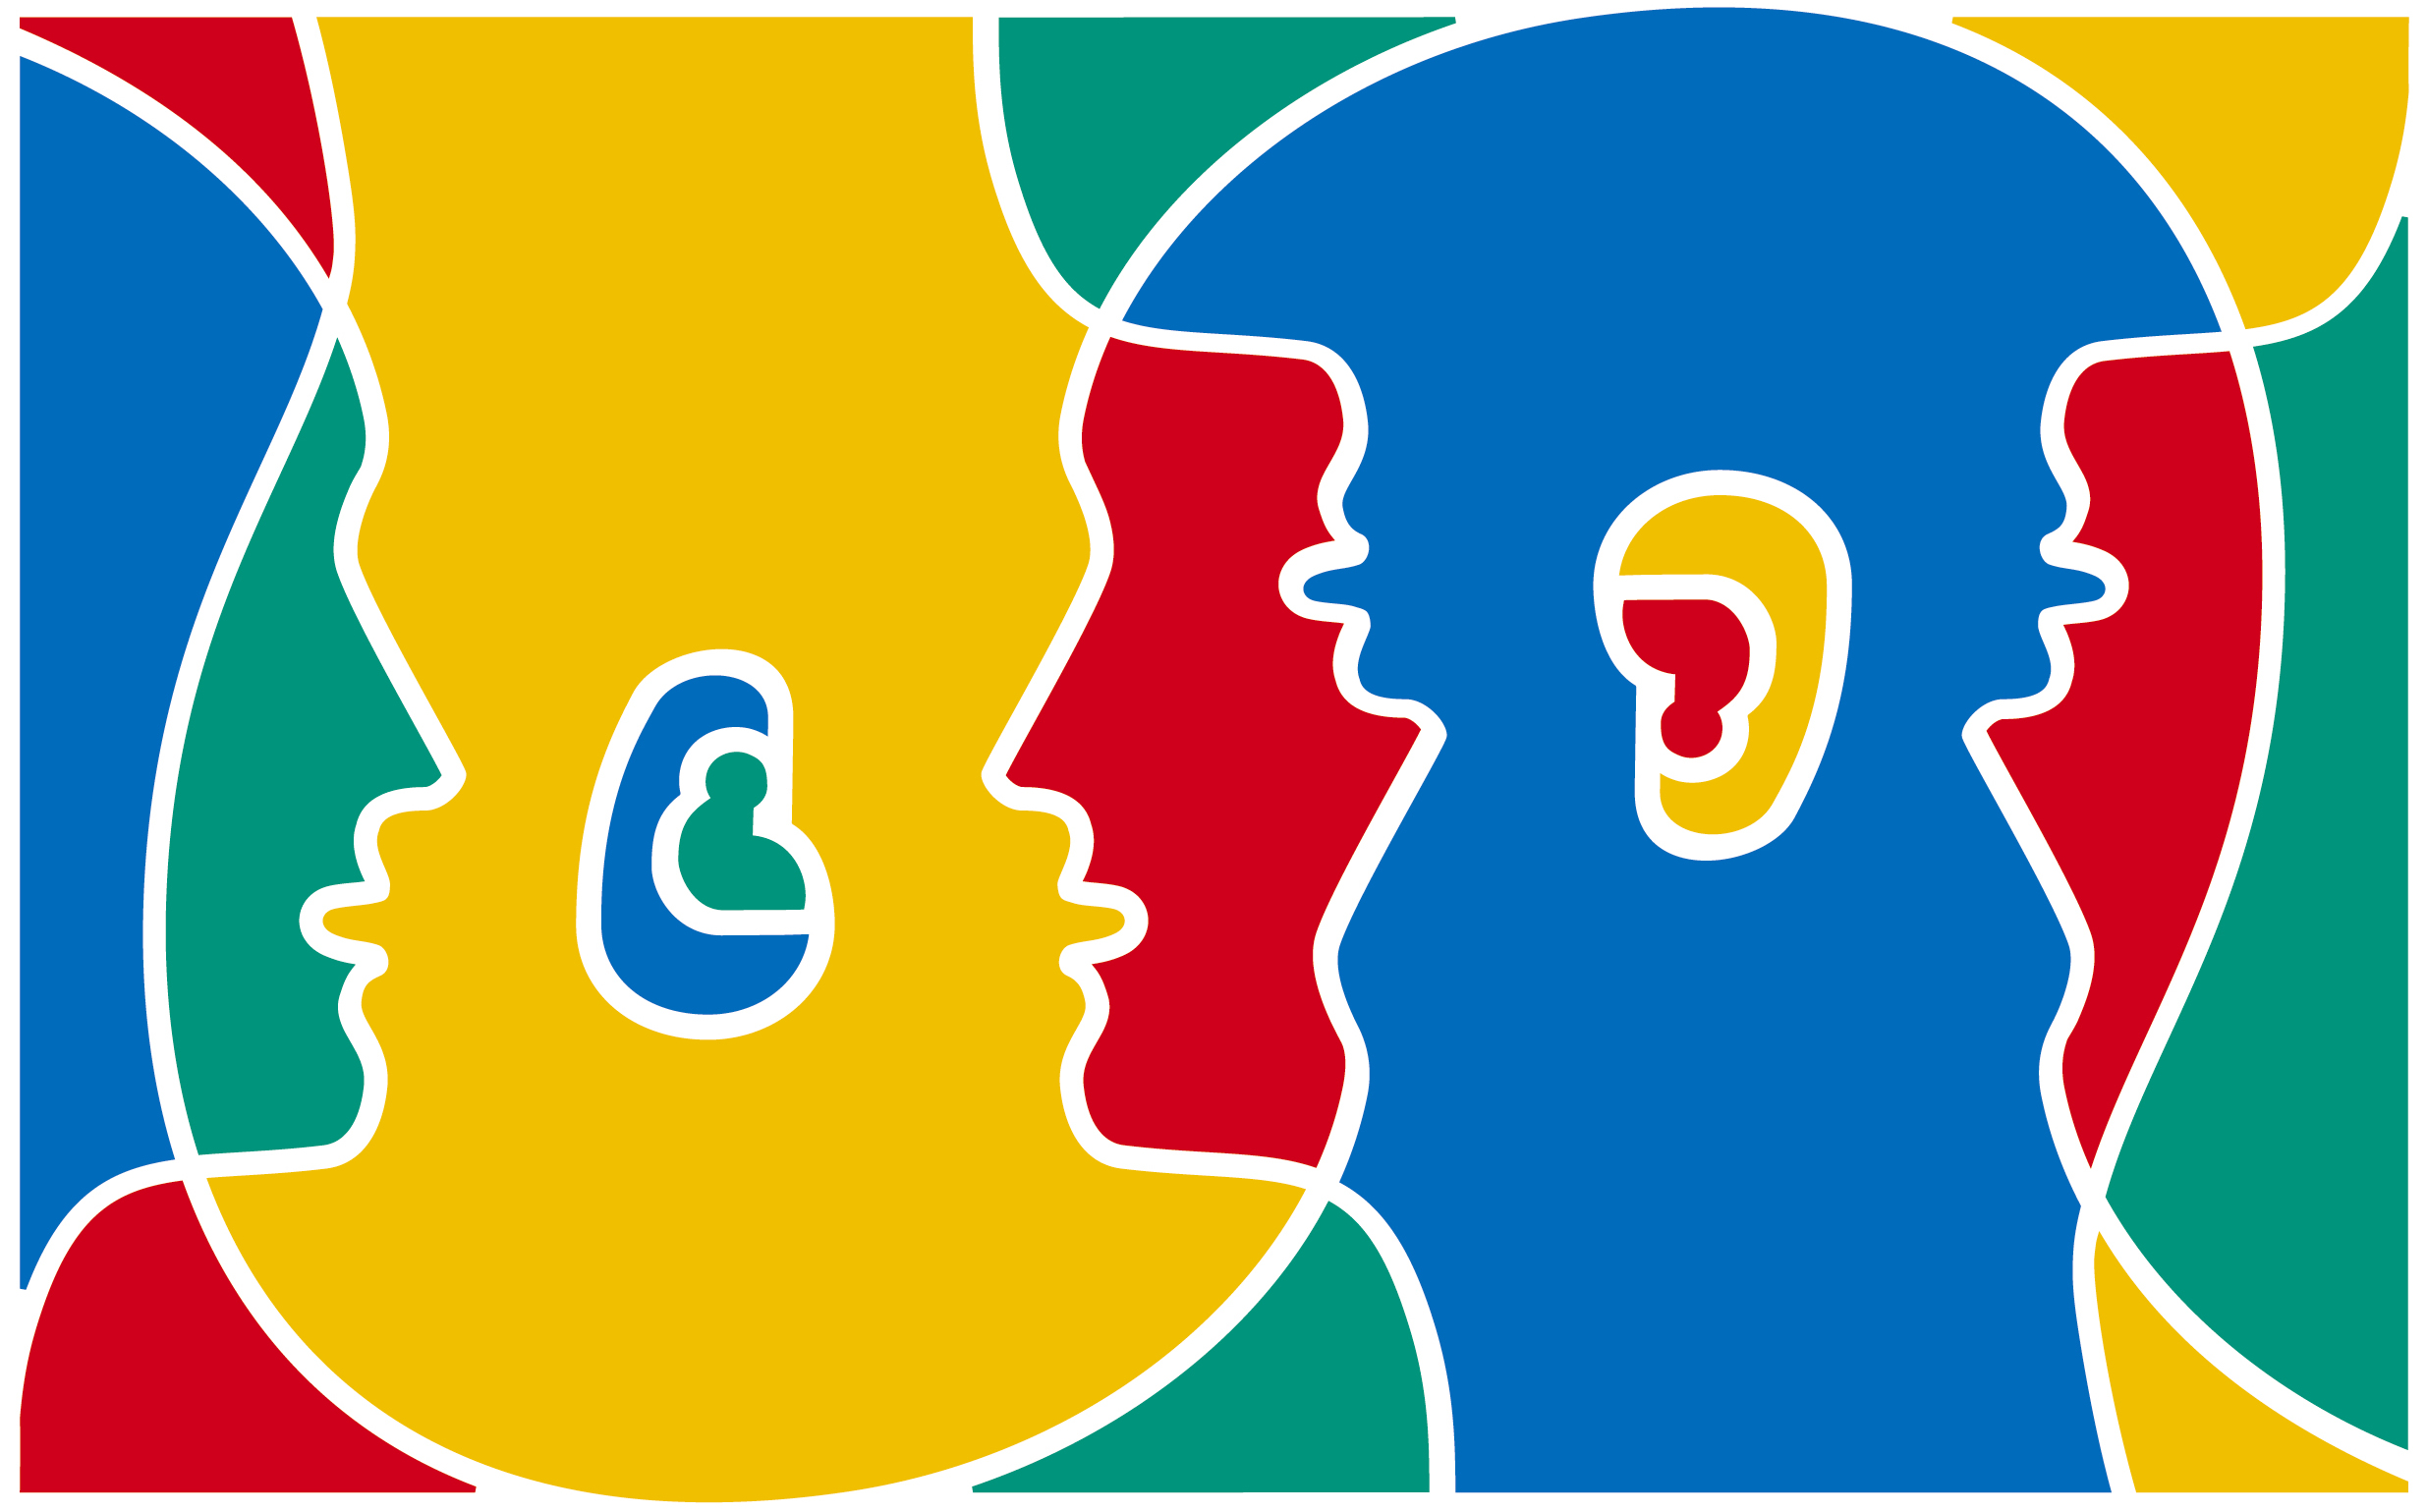 journée européenne des langues 2019 logo association odyssée bordeaux france interculturelle activités jeune européen européenne europe erasmus